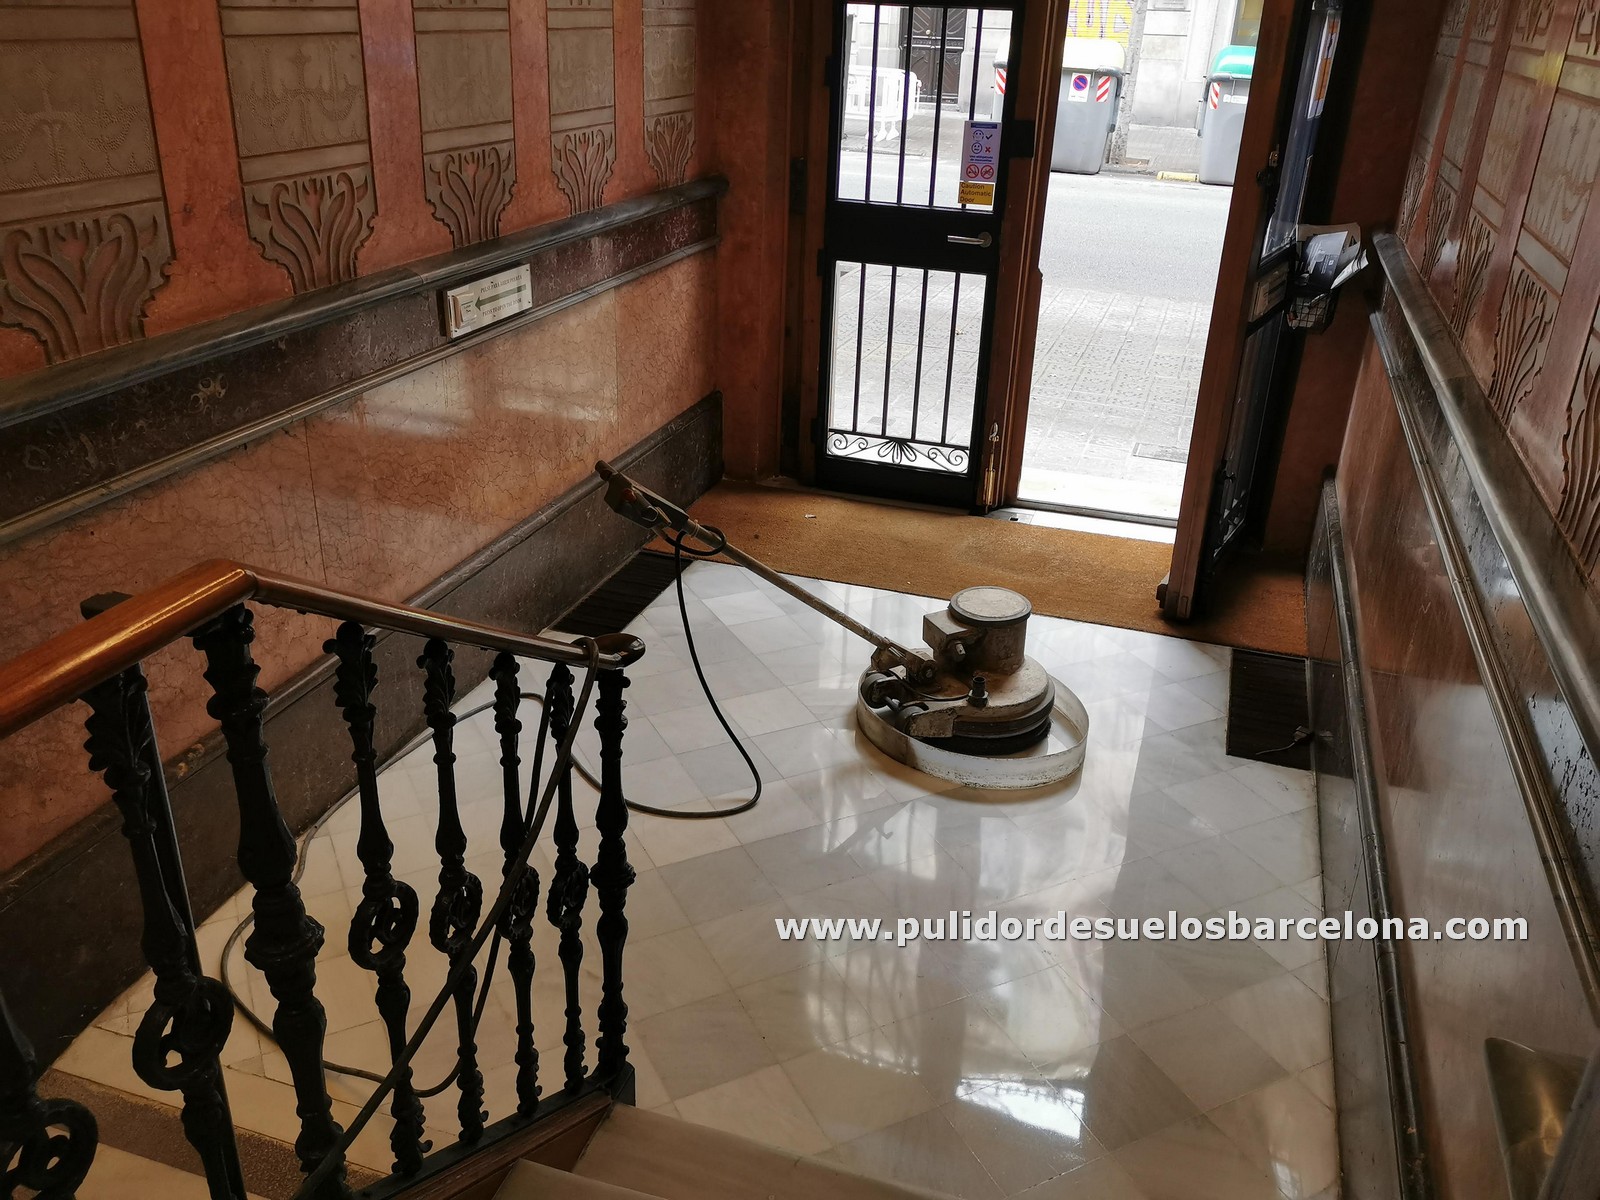 Pulido de Suelos en Zaragoza, Pulido de Escaleras